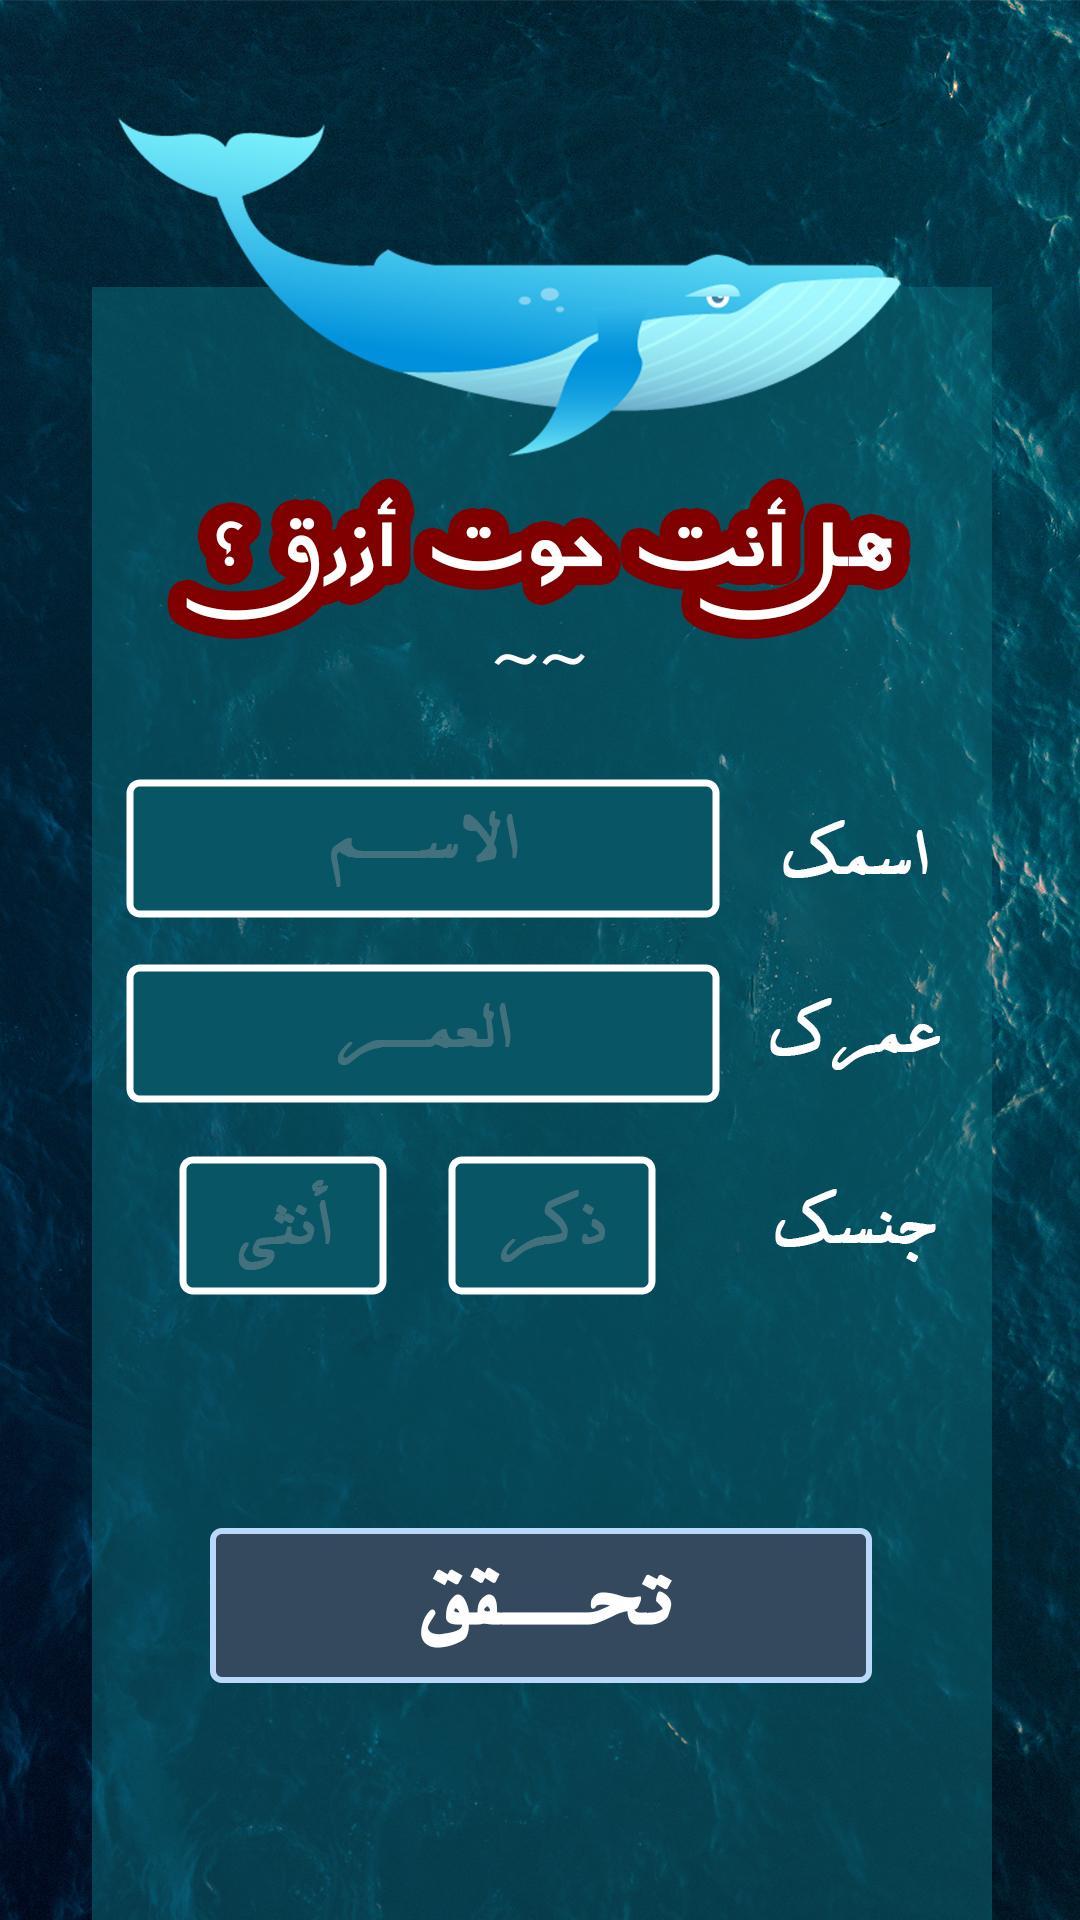 لعبة الحوت الأزرق: النسخة العربية for Android - APK Download